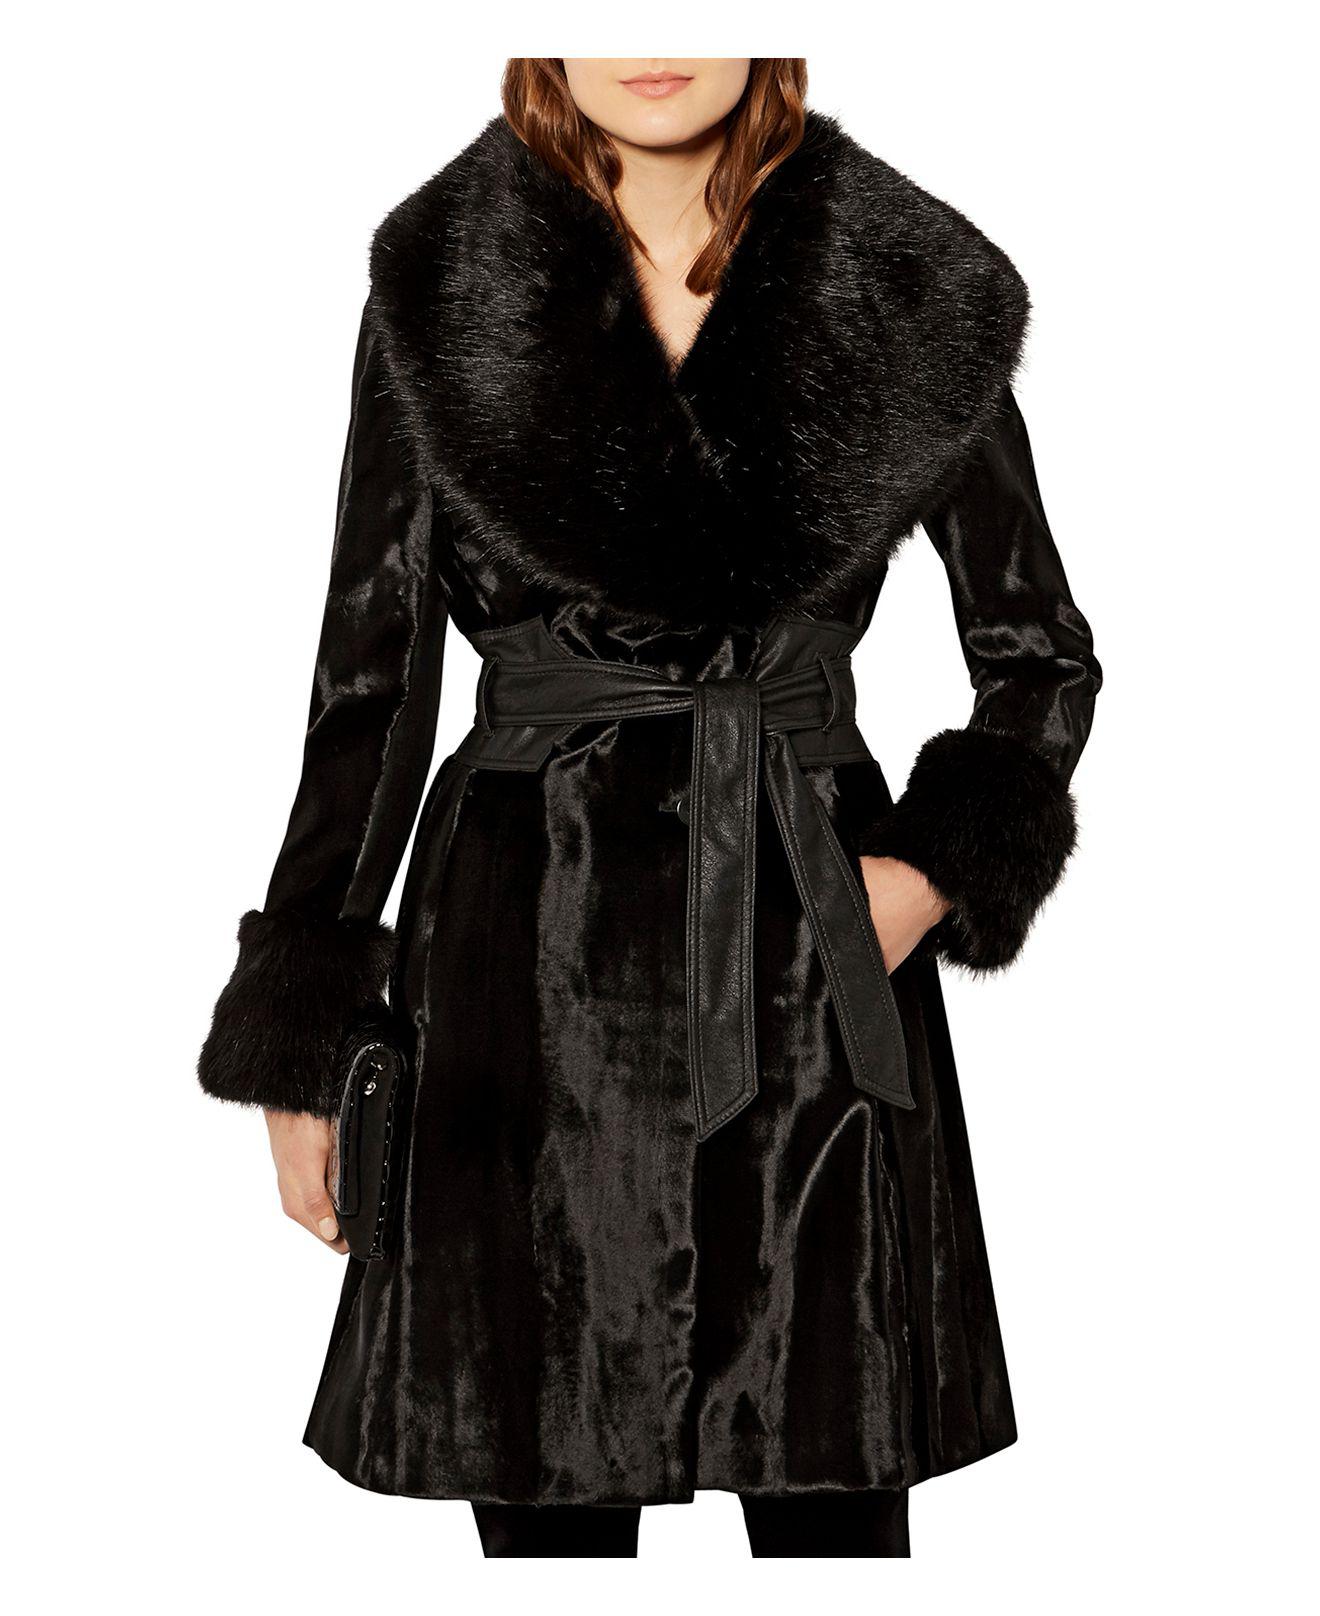 Karen Millen Faux-fur & Pony Hair Coat in Black - Lyst